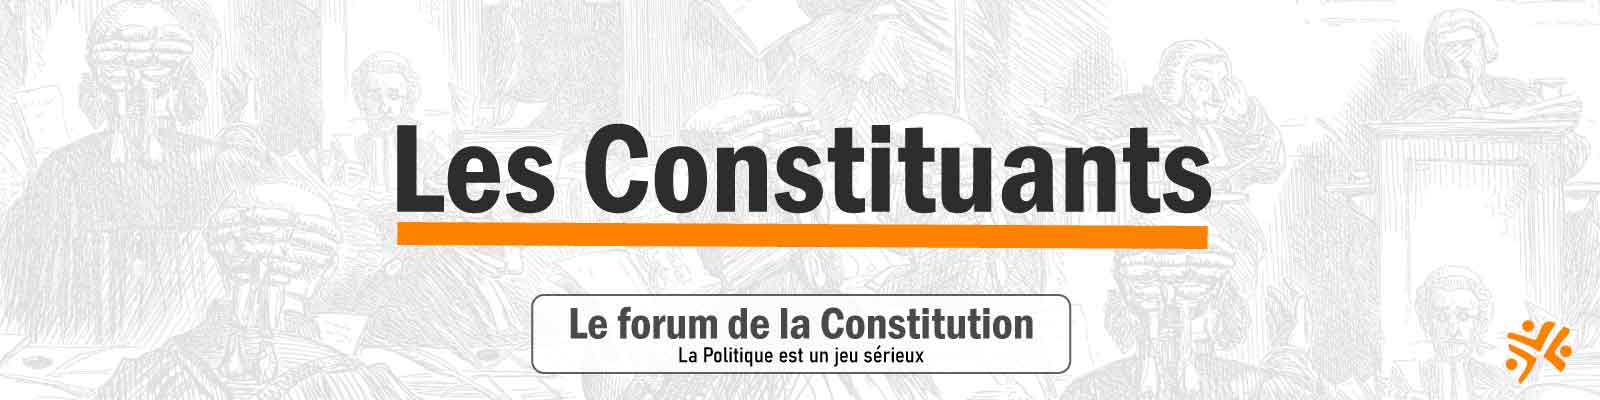 Index de la Constitution pour la Démocratie Directe